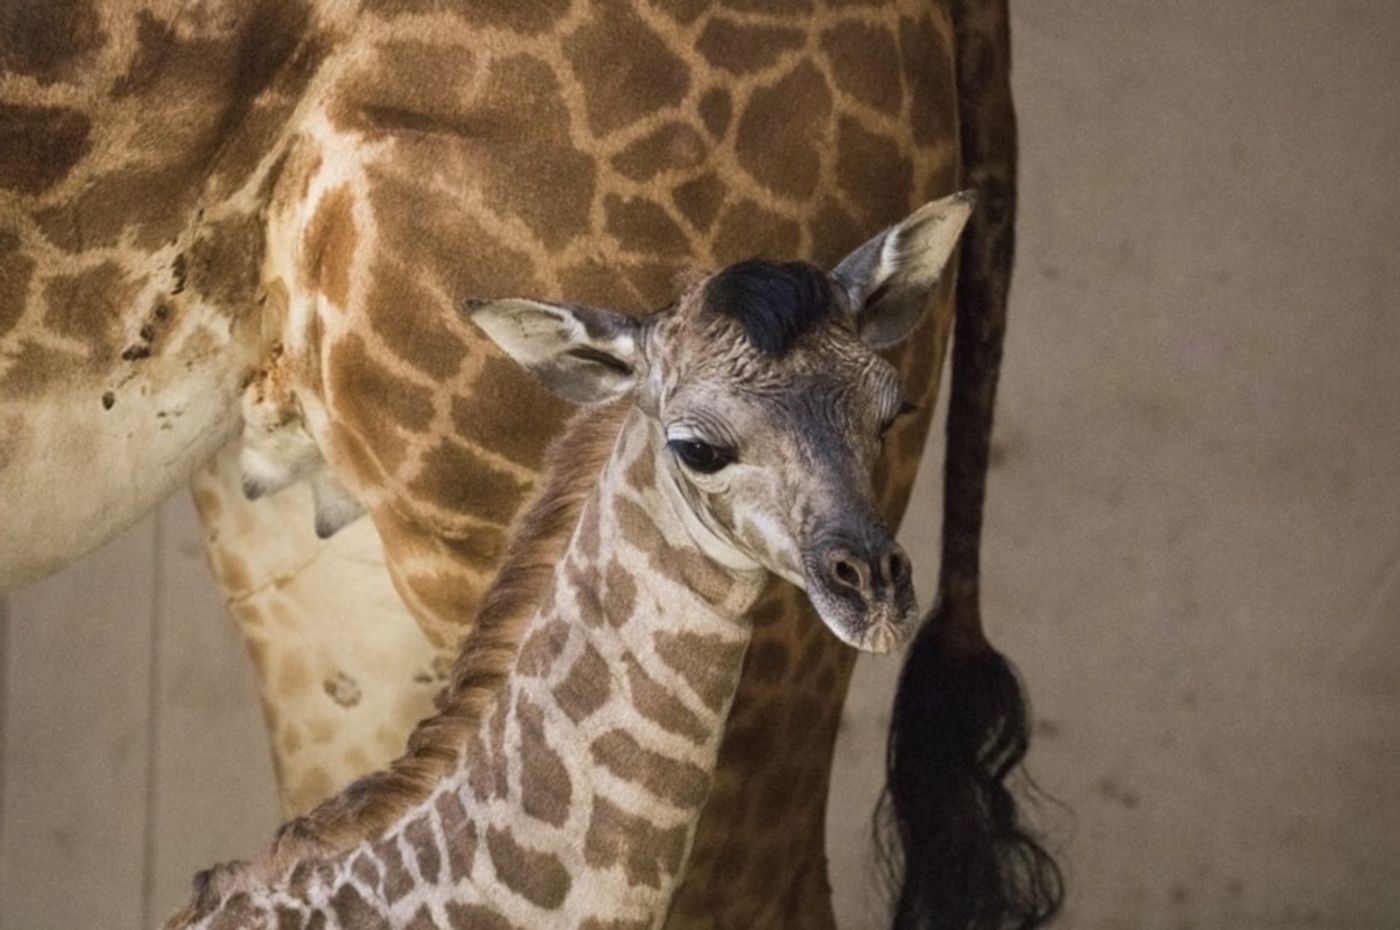 Meet the new baby giraffe from Santa Barbara Zoo.